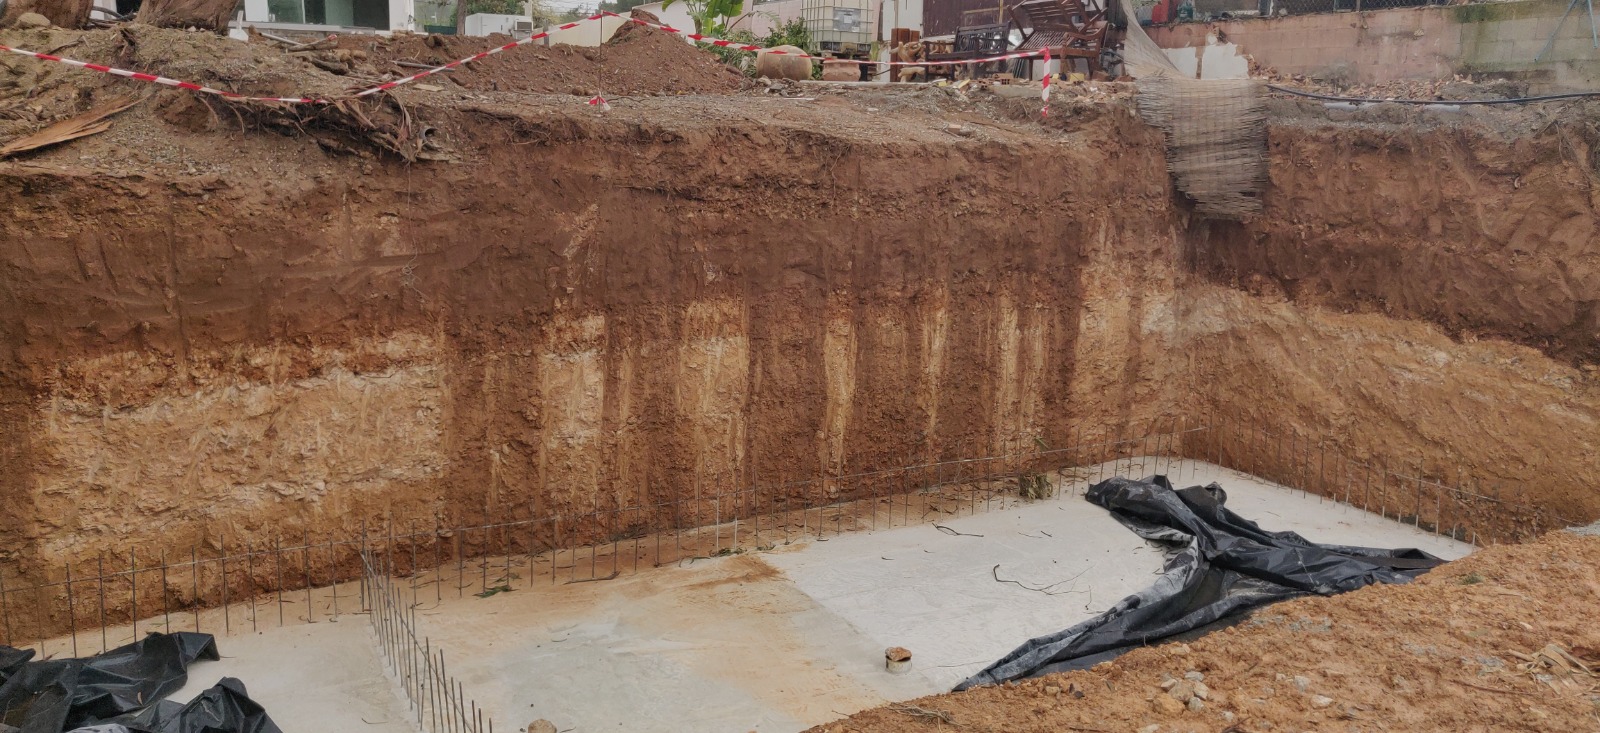 Els treballs de construcció a l’antic local nocturn KM5 d’Eivissa són il·legals